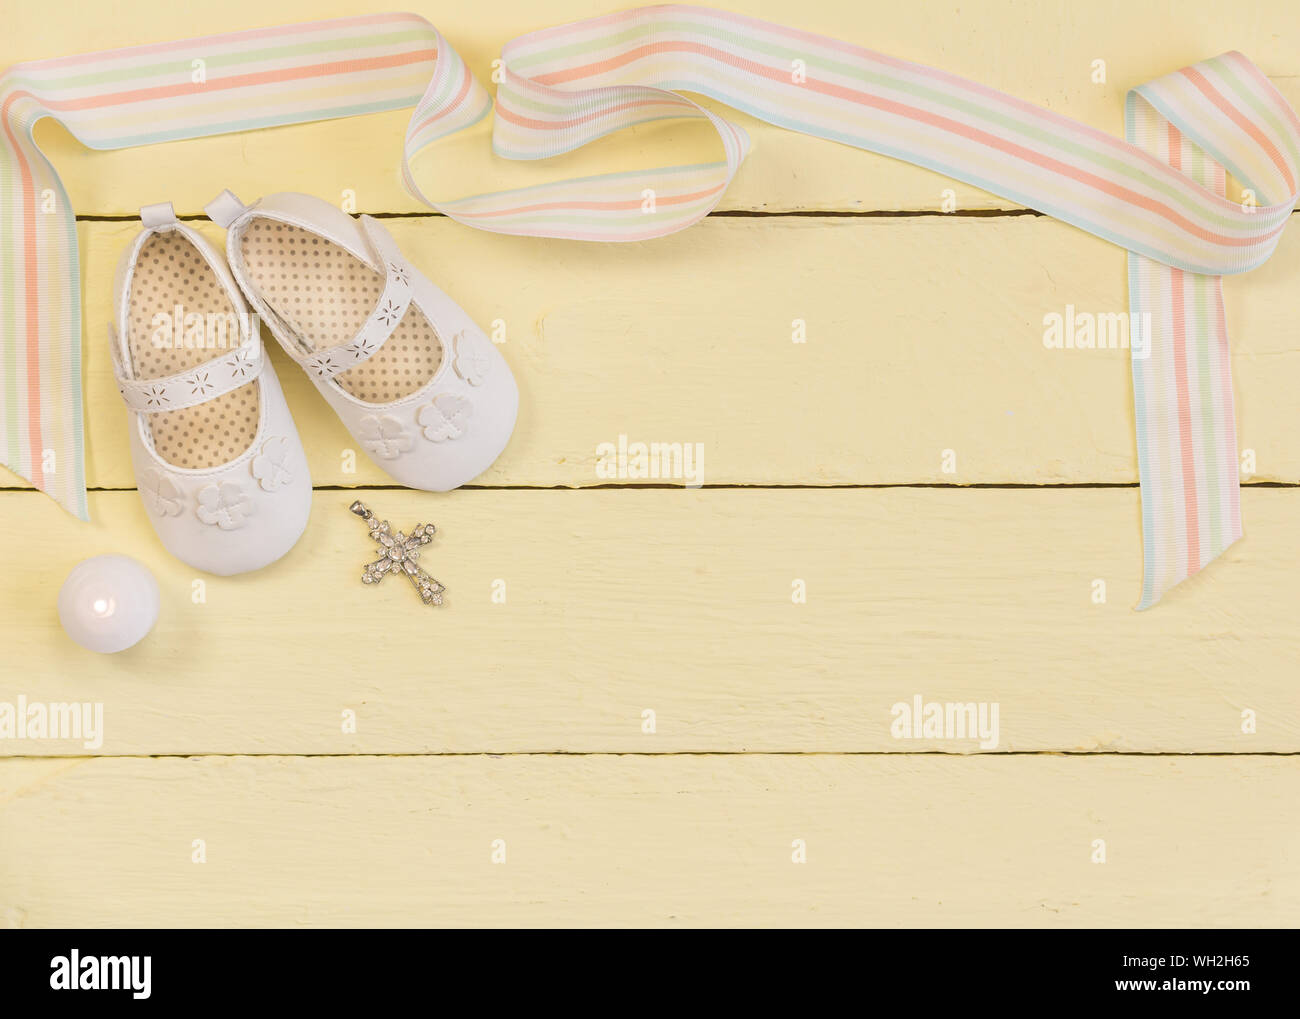 Taufe Hintergrund mit weißen Schuhen, Band, Kerze und Kristall Kreuz Anhänger auf blass gelb lackierten Holz- Hintergrund - Ansicht von oben Foto Stockfoto